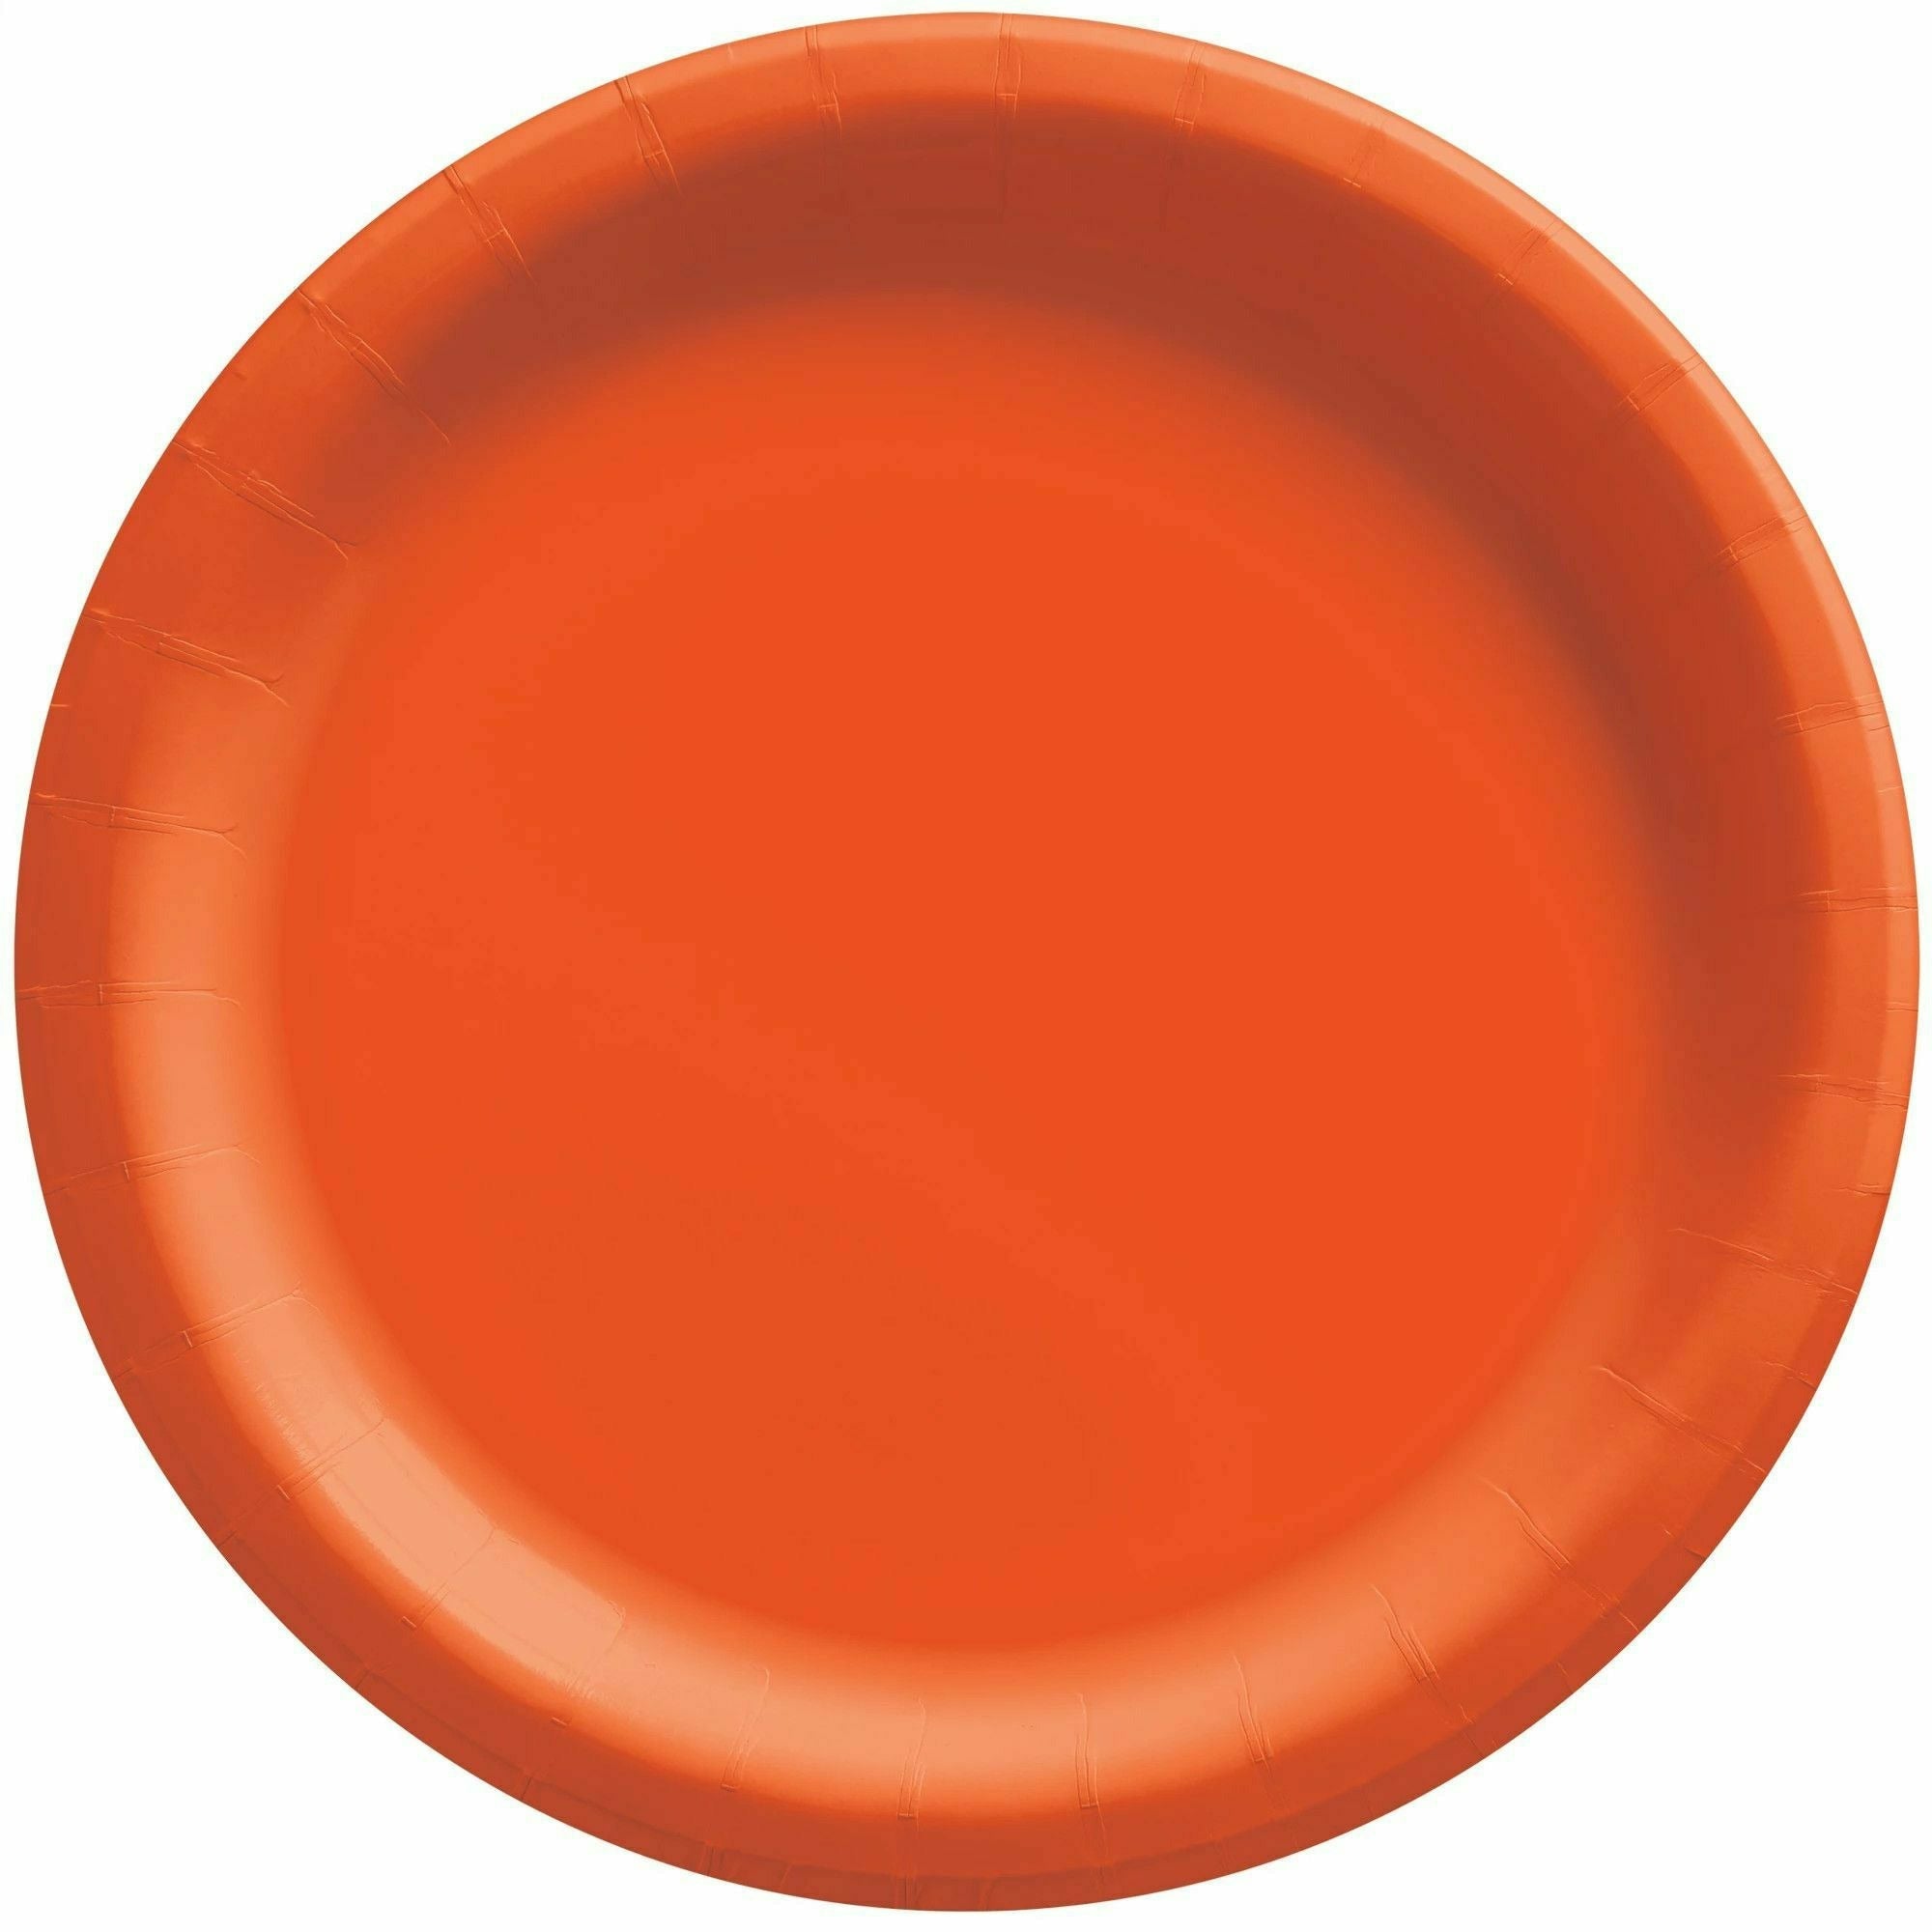 Amscan BASIC Orange Peel - 6 3/4" Round Paper Plates, 50 Ct.